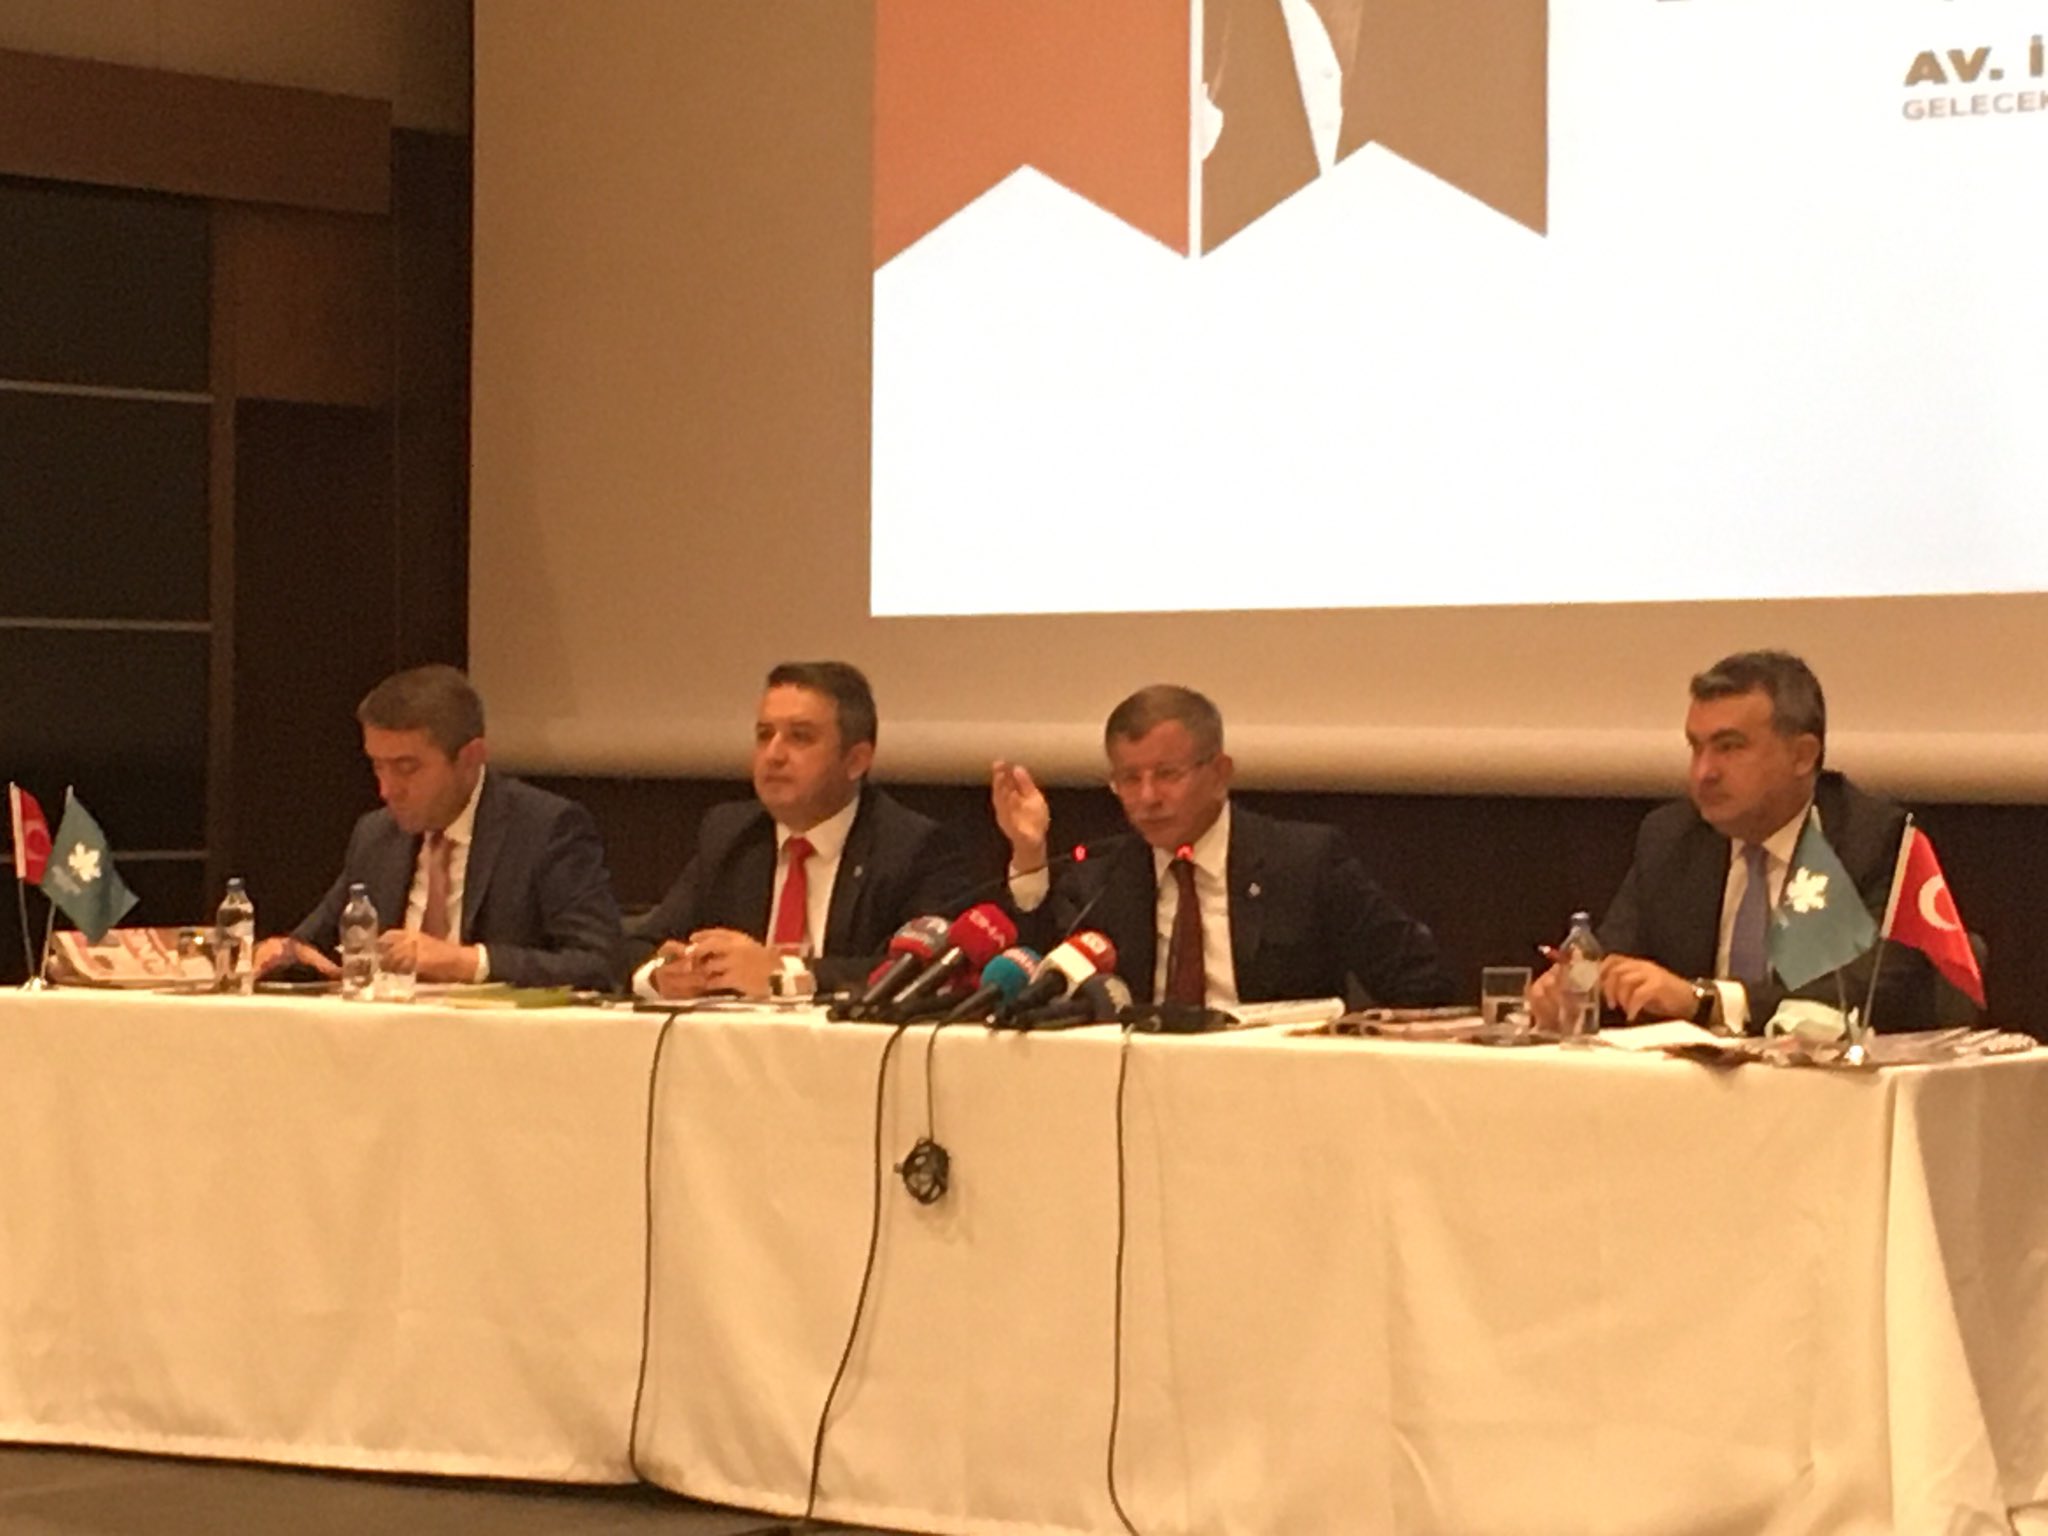 Gelecek Partisi Genel Başkanı Ahmet Davutoğlu: “İstanbul İmar Yasası konusunda; bütün Partilerin mutabakat sağlaması, yasal güvenceye alması lazım!”